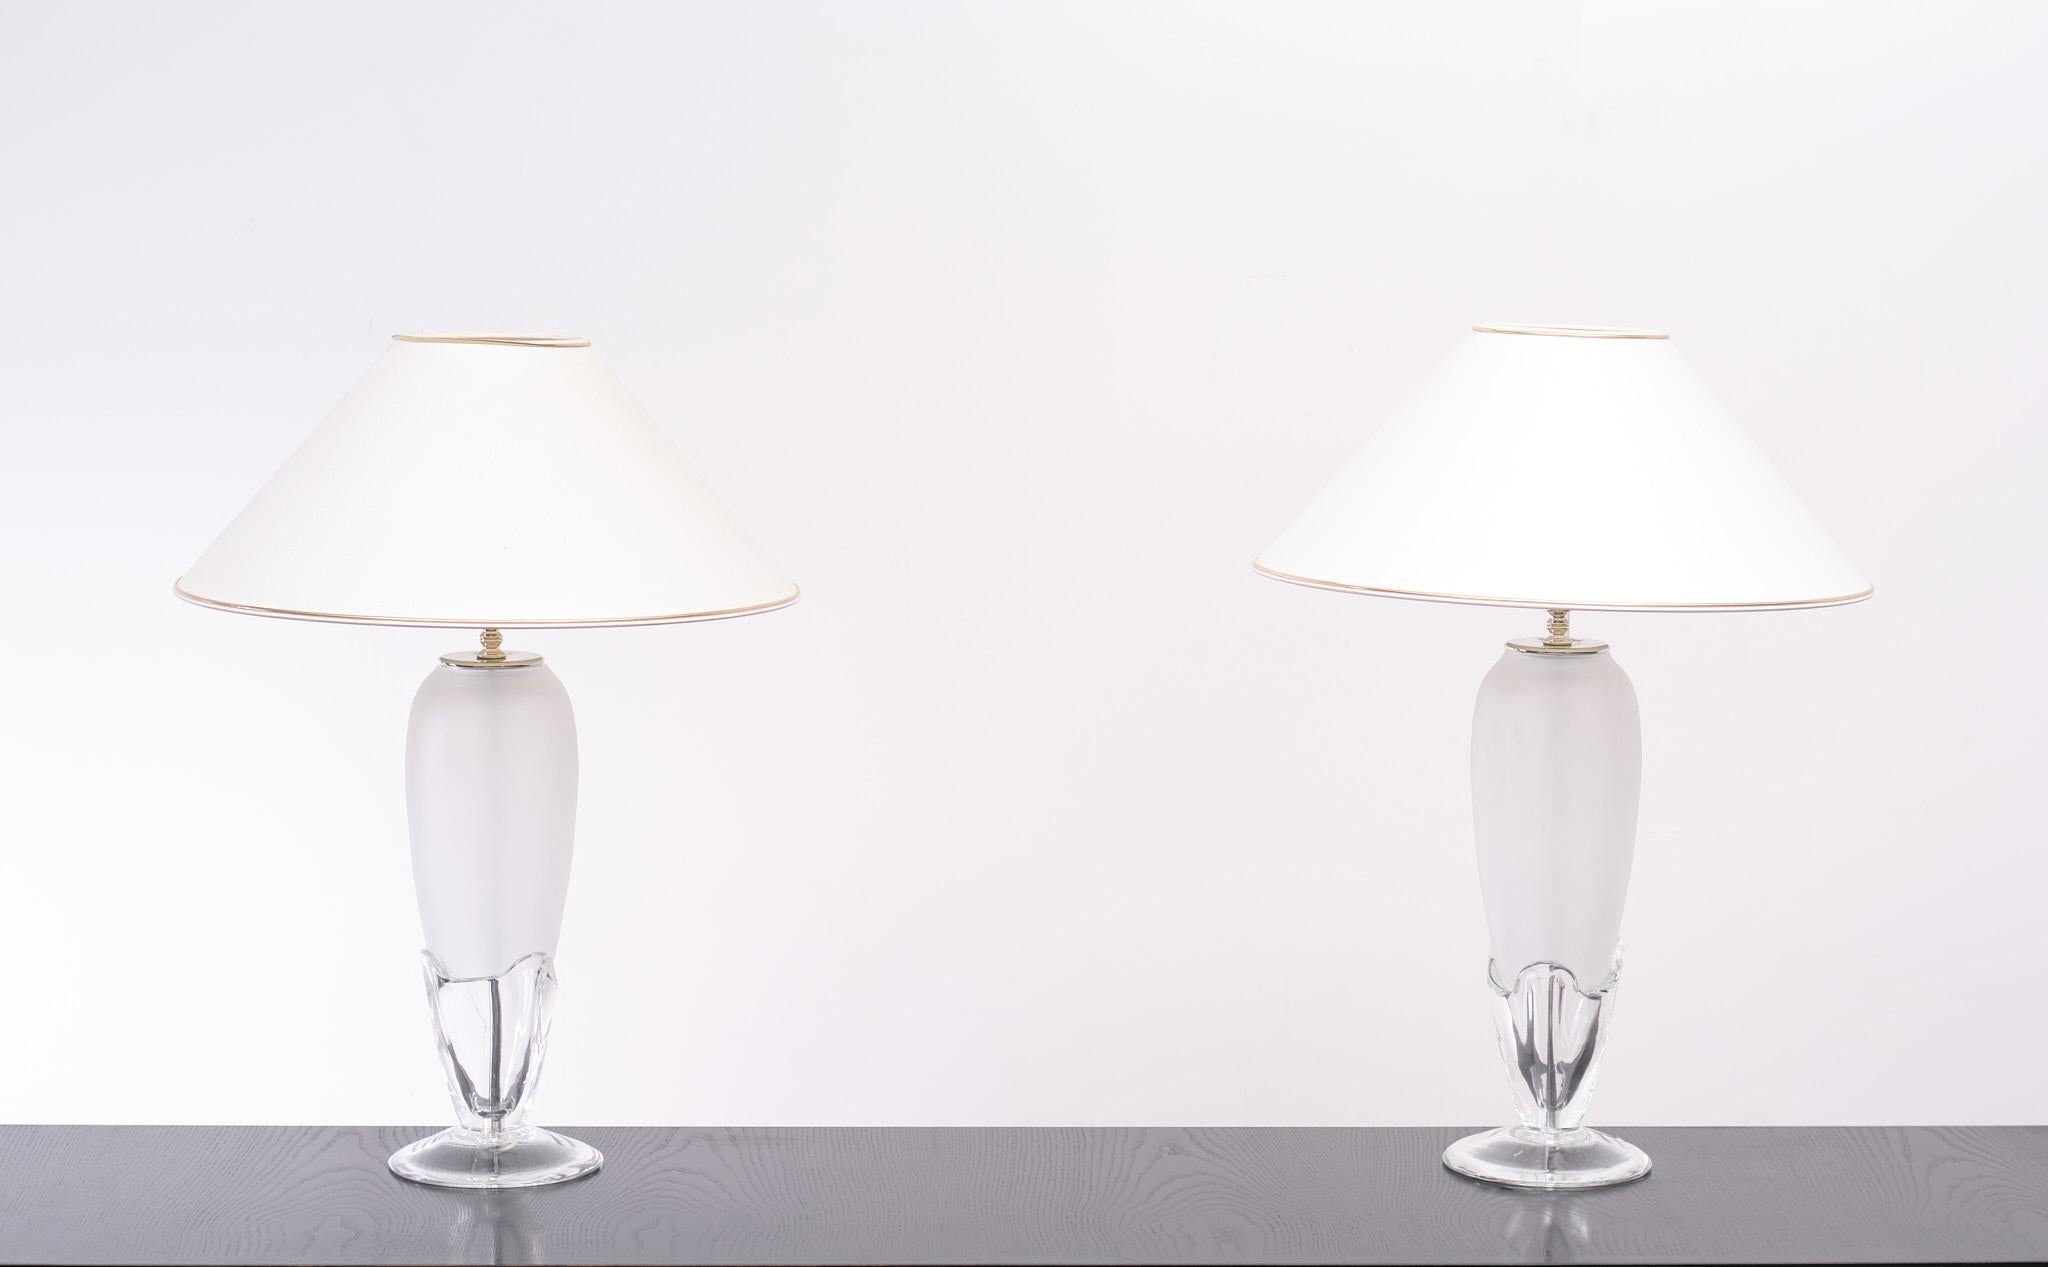 Zwei sehr schöne Vase förmigen Tischlampen Designer Roberta Vitadello Hergestellt von Italamp Italien.Clear Chrystal Glas Basis.kommt mit mattiertem Glas aufrecht. Komplett mit Schirmen. Je eine E27-Glühbirne erforderlich. Signiert Italamps